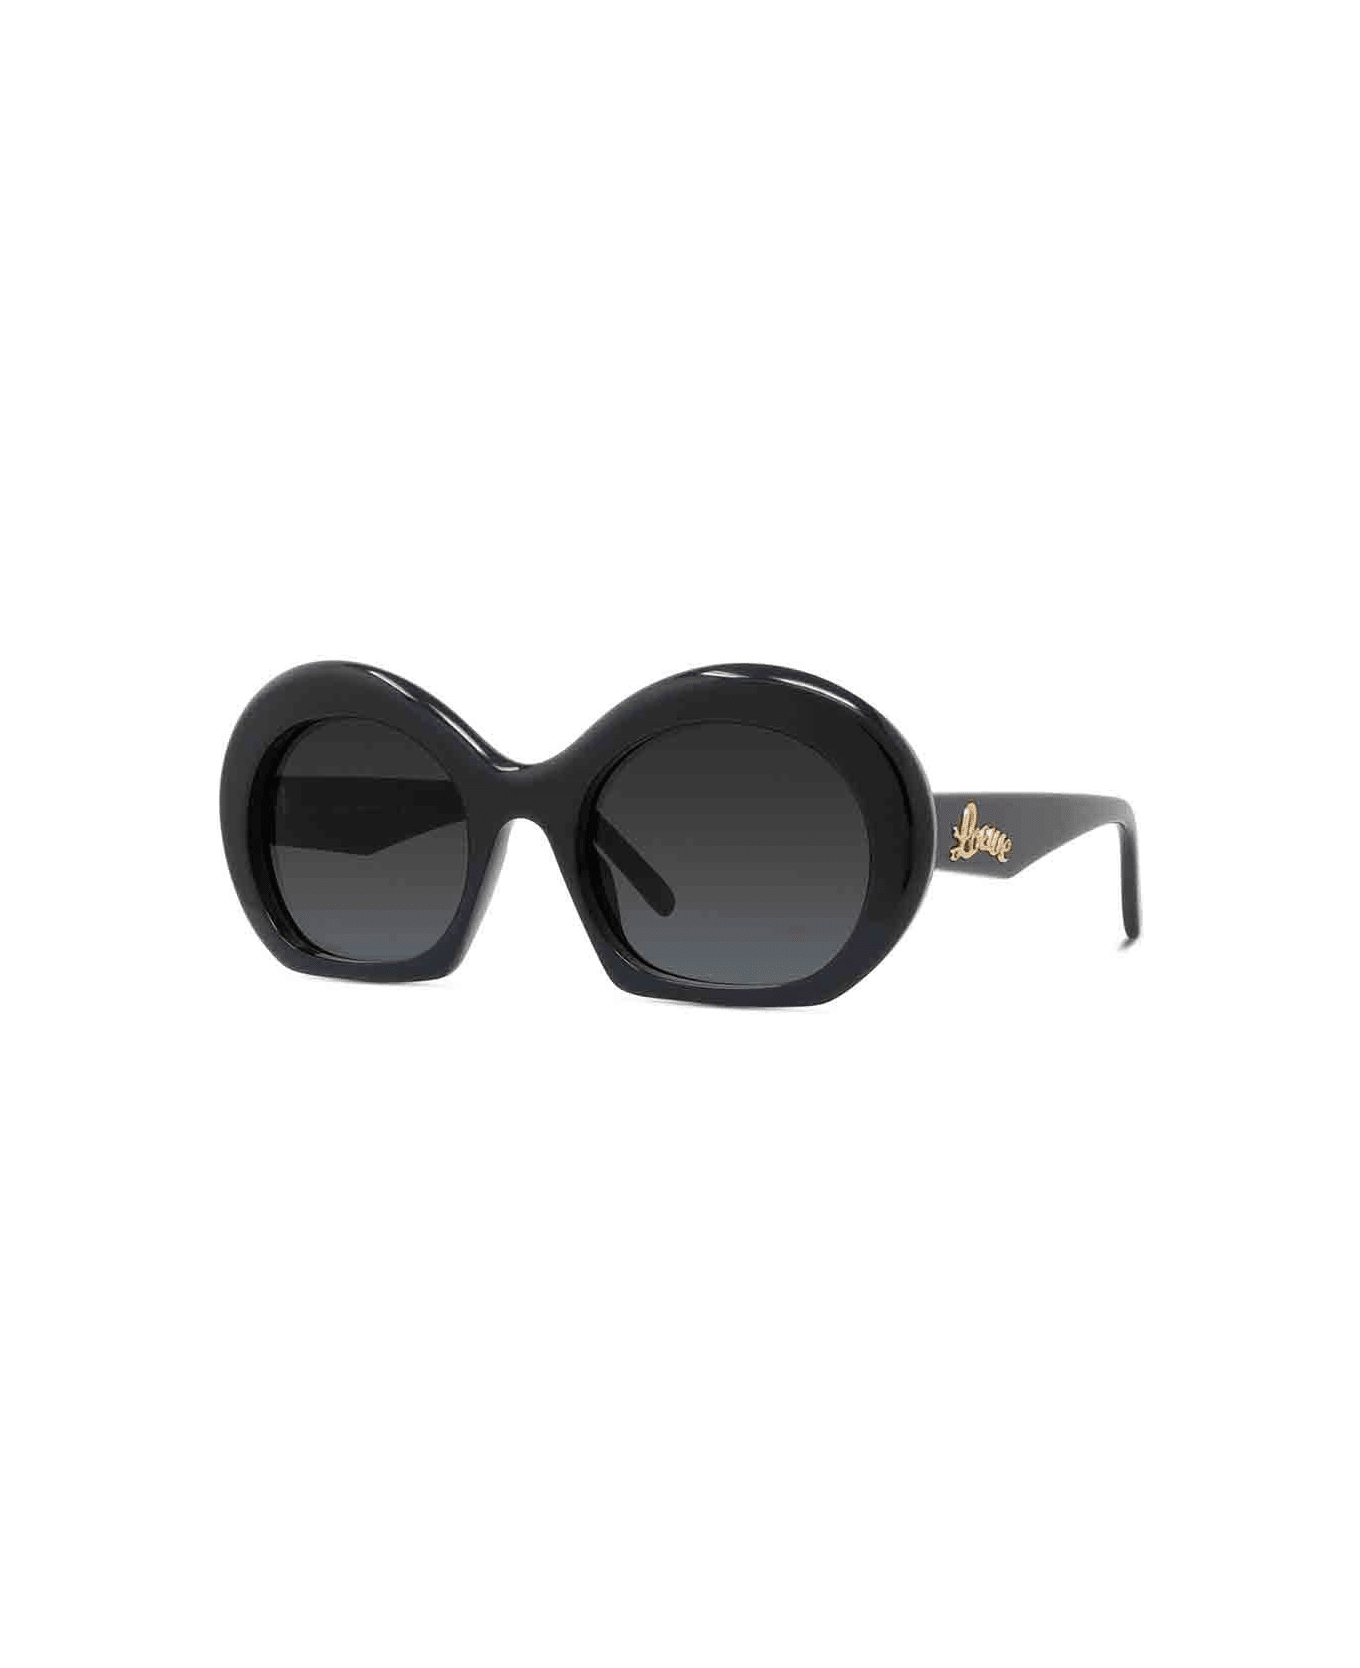 Loewe Sunglasses - Nero/Nero サングラス